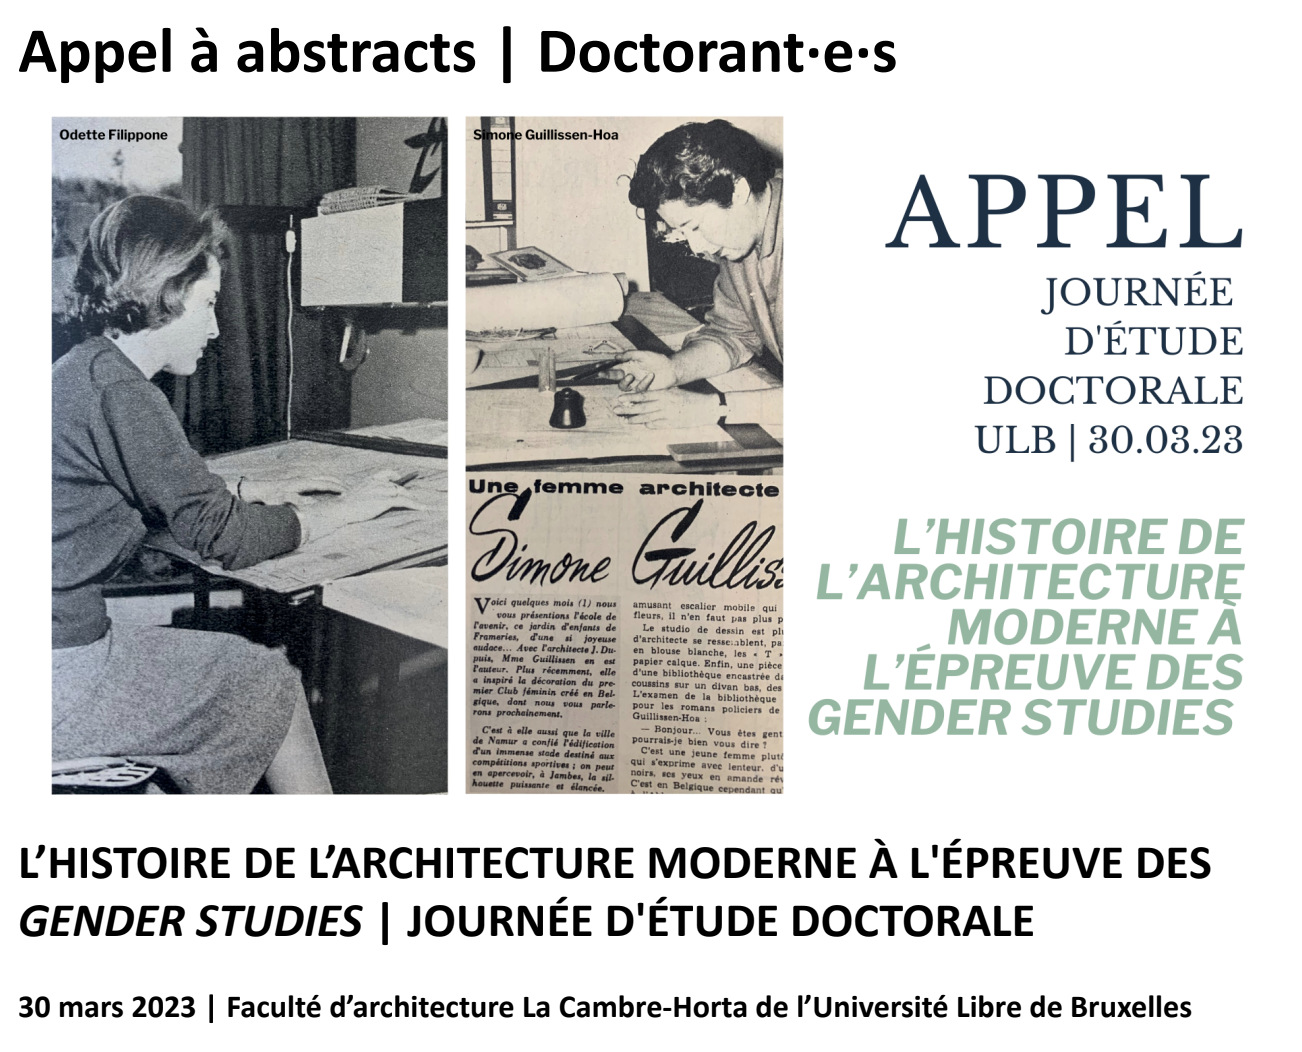 09/01/23 - Appel à abstracts - Journée d'études doctorales - "L'Histoire de l'architecture moderne à l'épreuve des Gender Studies"